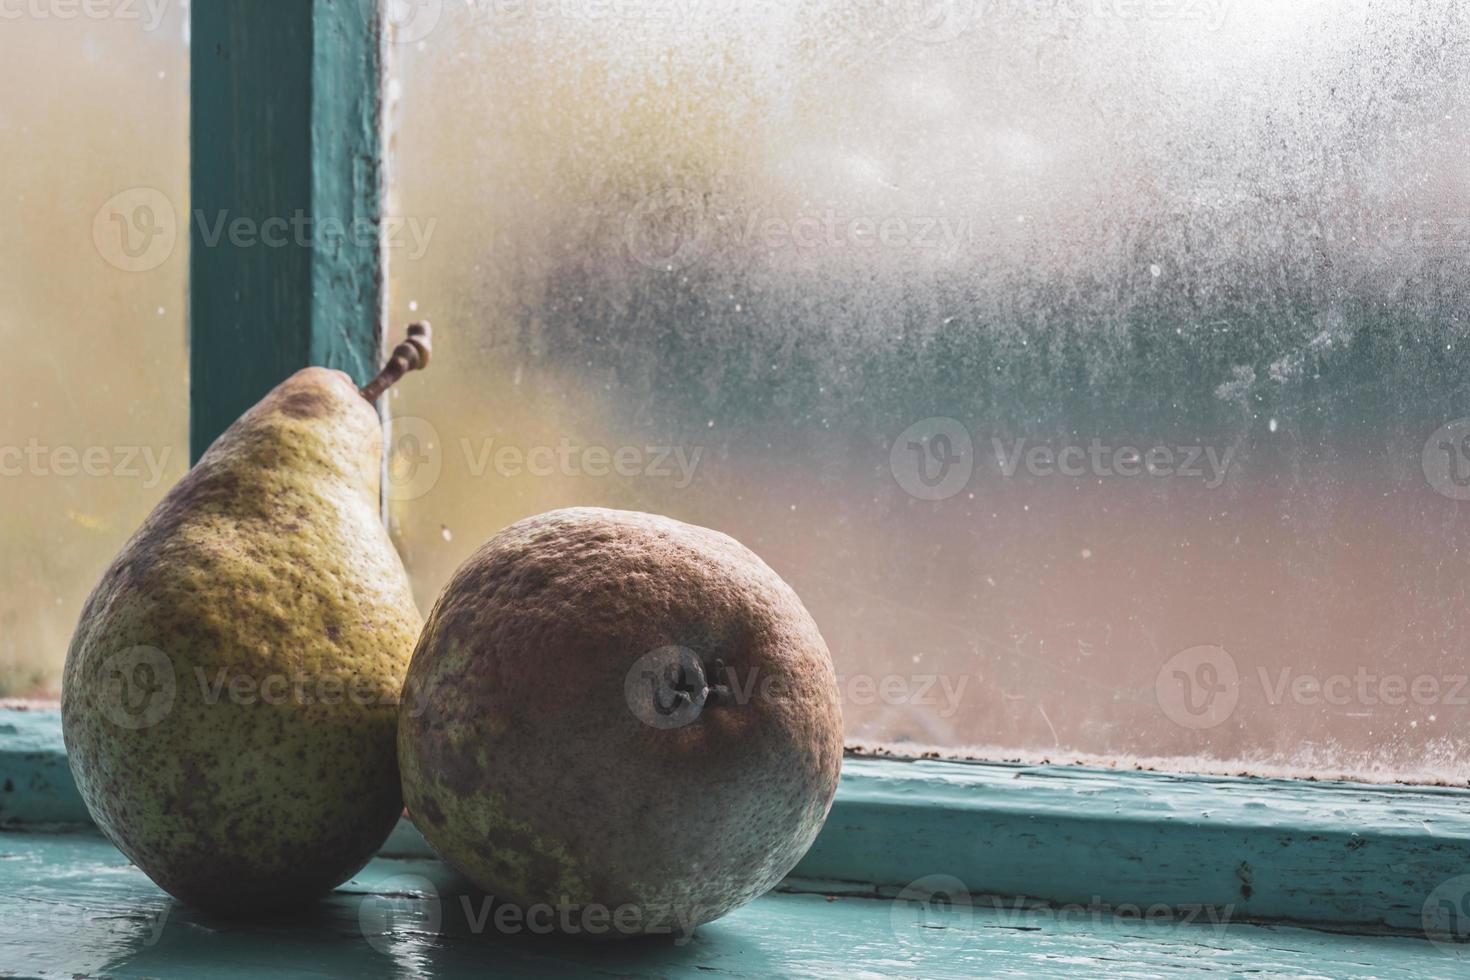 dos grandes peras después de la cosecha de otoño en una vieja ventana azul empañada. foto